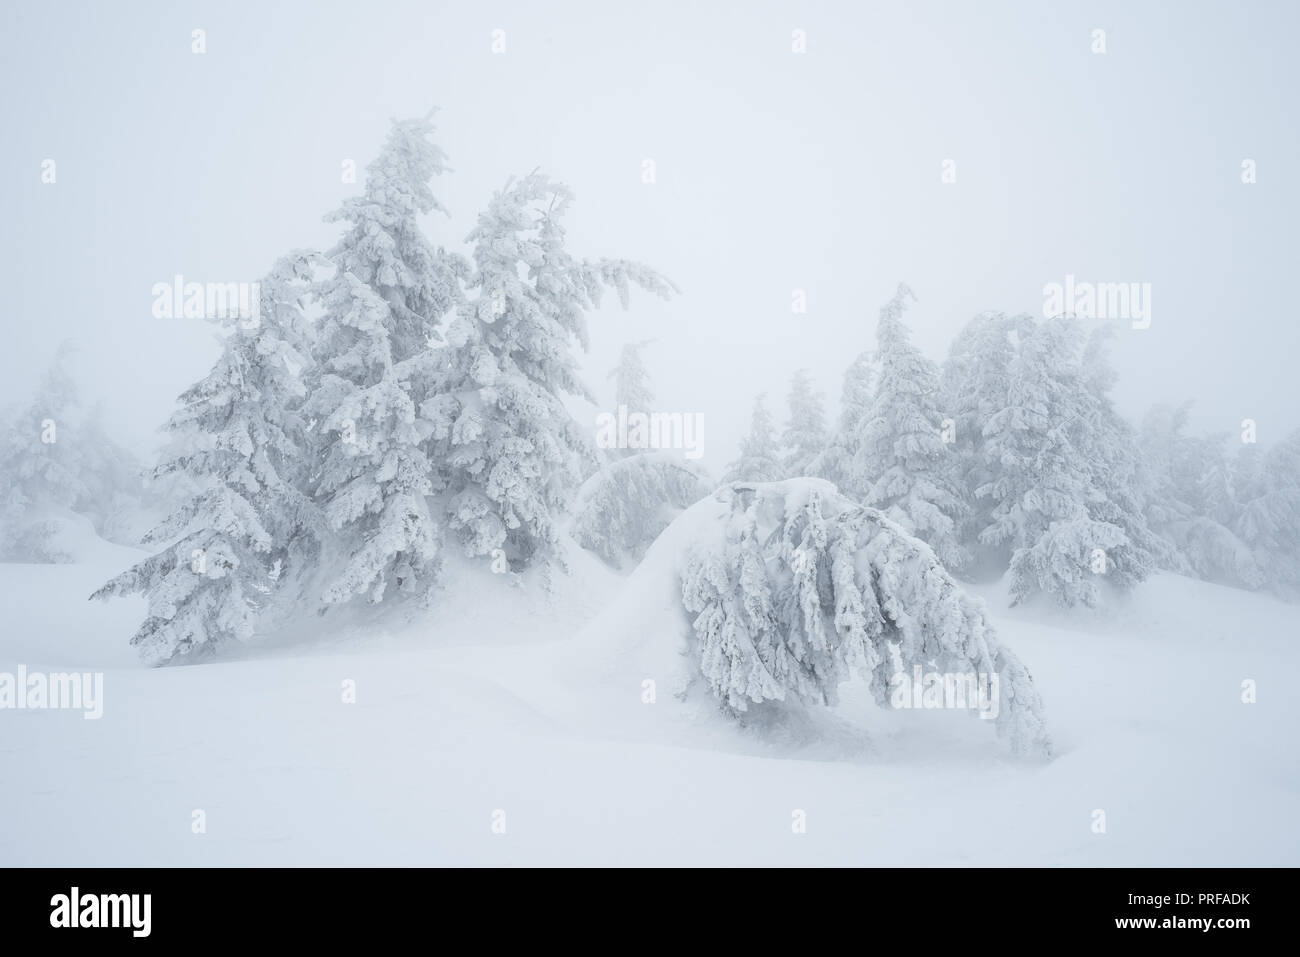 Paesaggio Di Natale. Gli abeti in neve. Giorno nuvoloso con nebbia. Carpazi, Ucraina, Europa Foto Stock